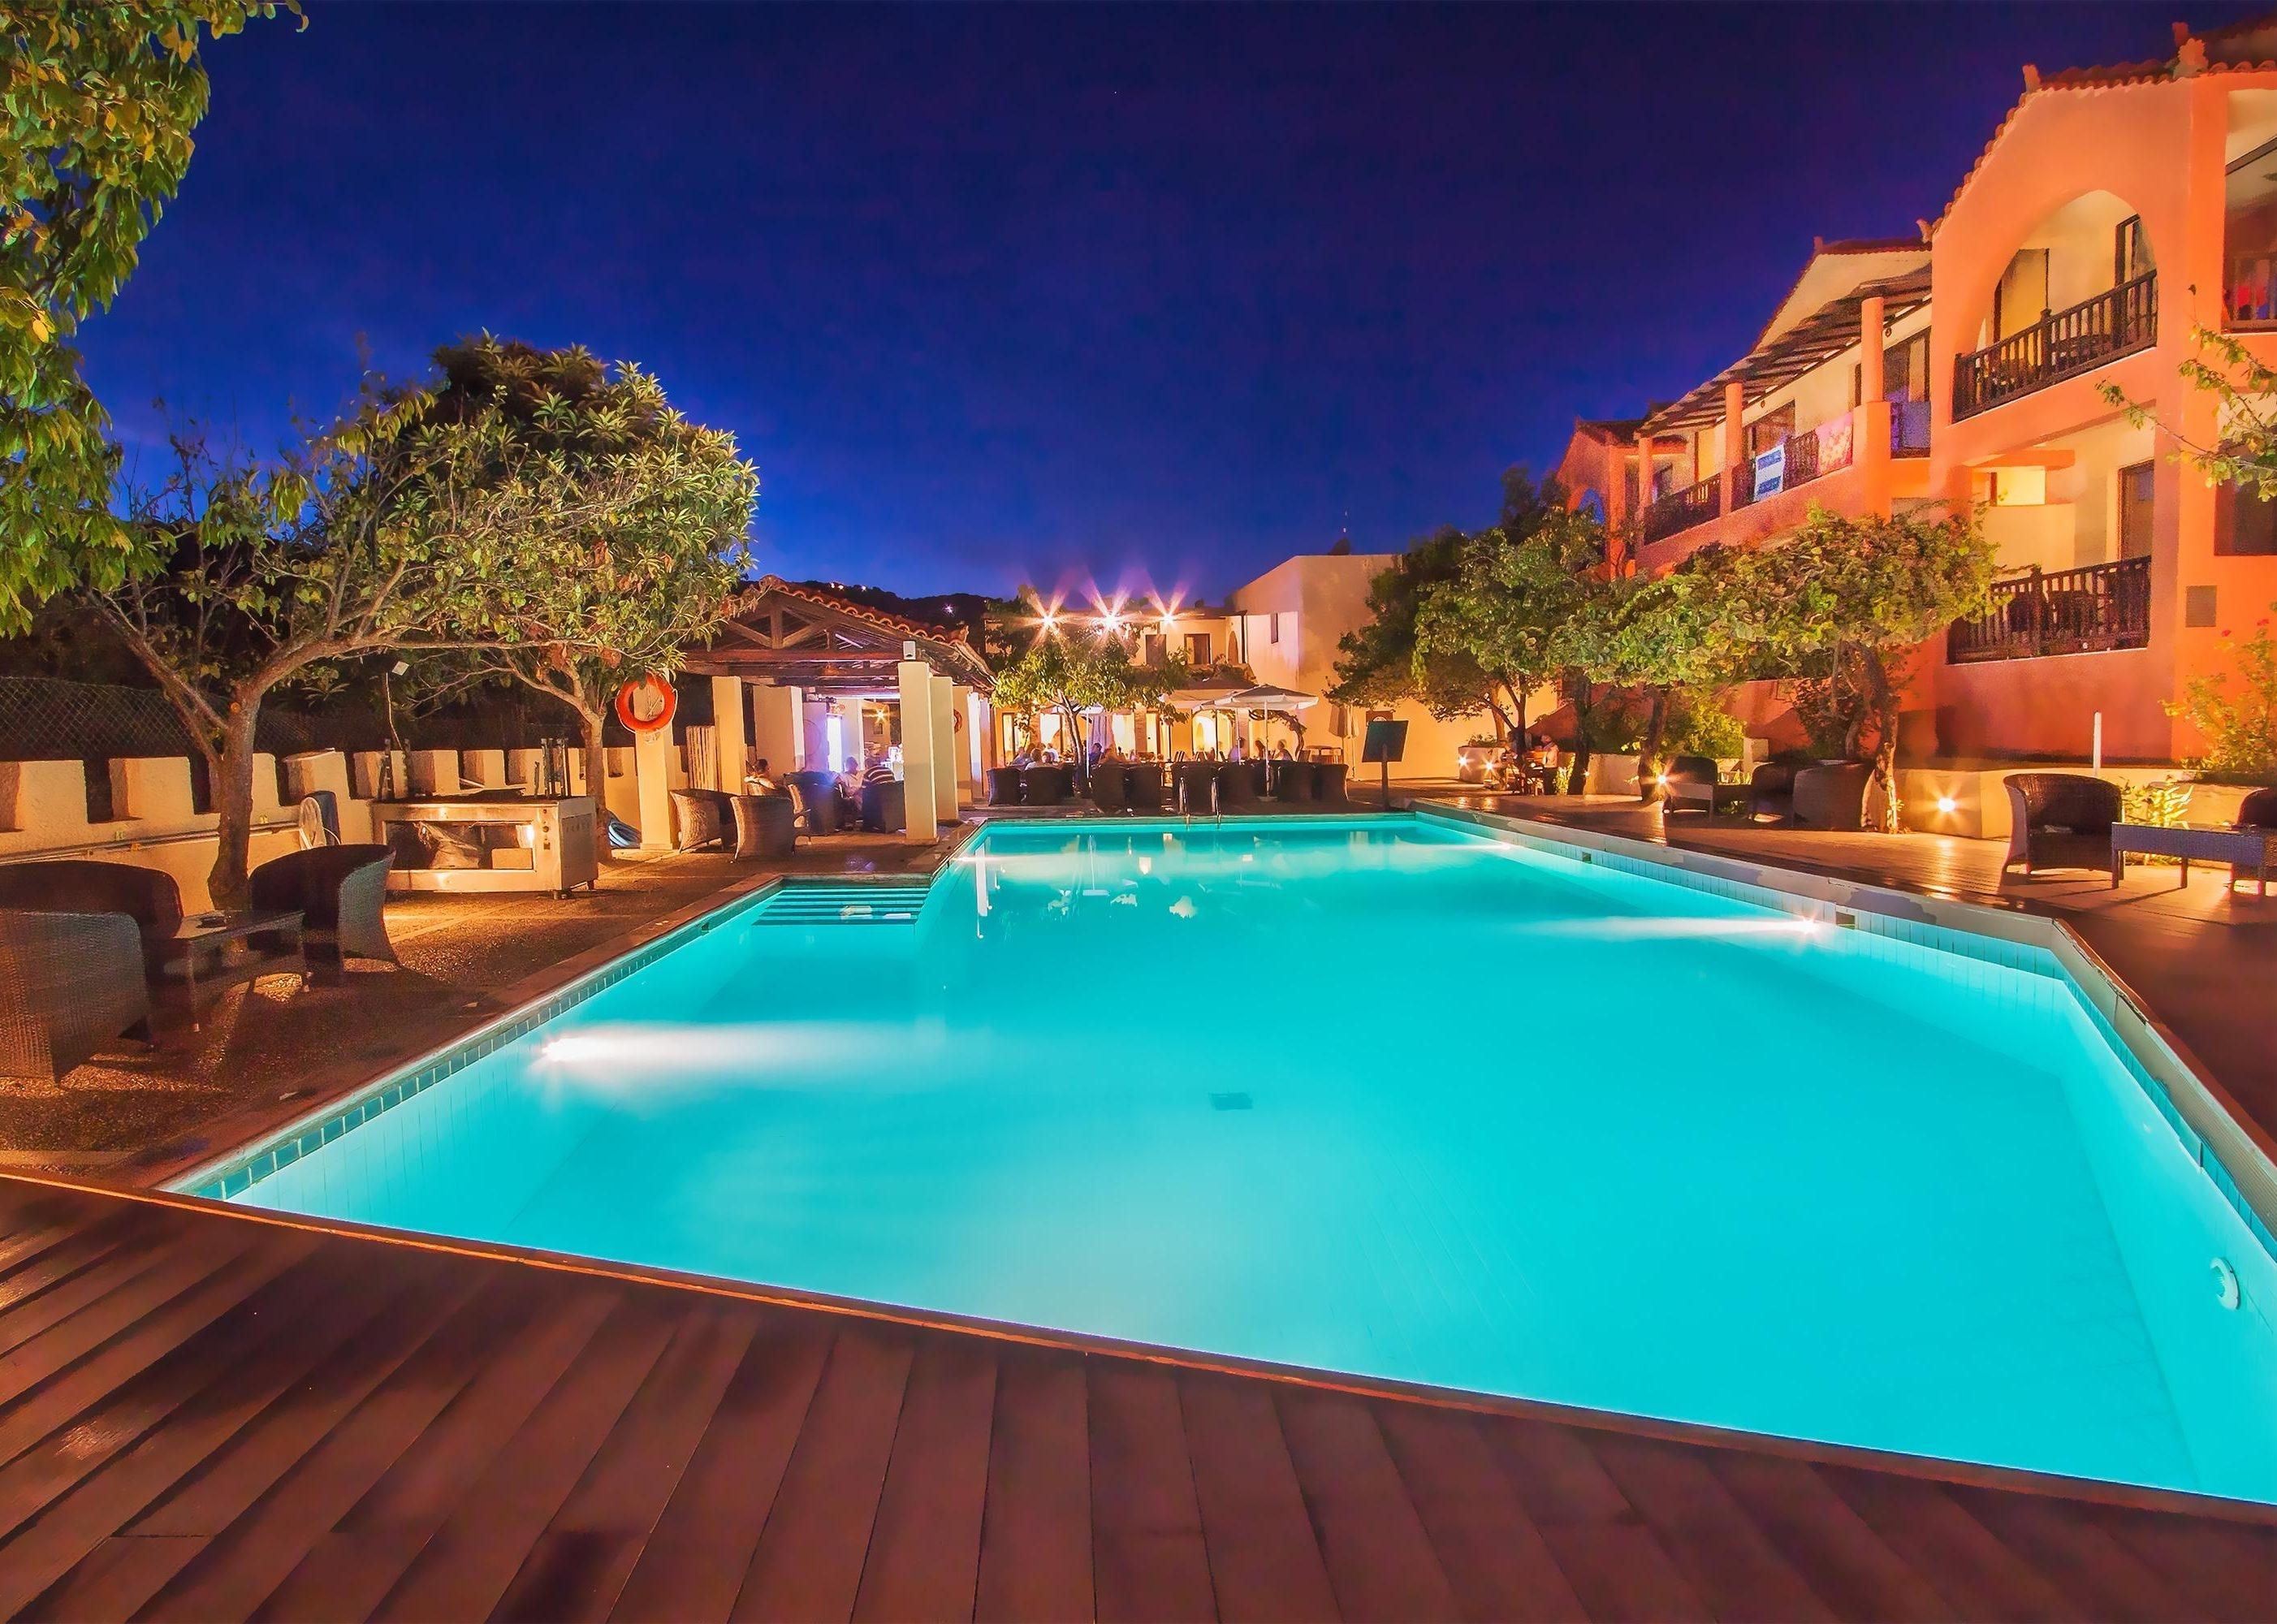 Rigas Hotel in Skopelos with big pool night